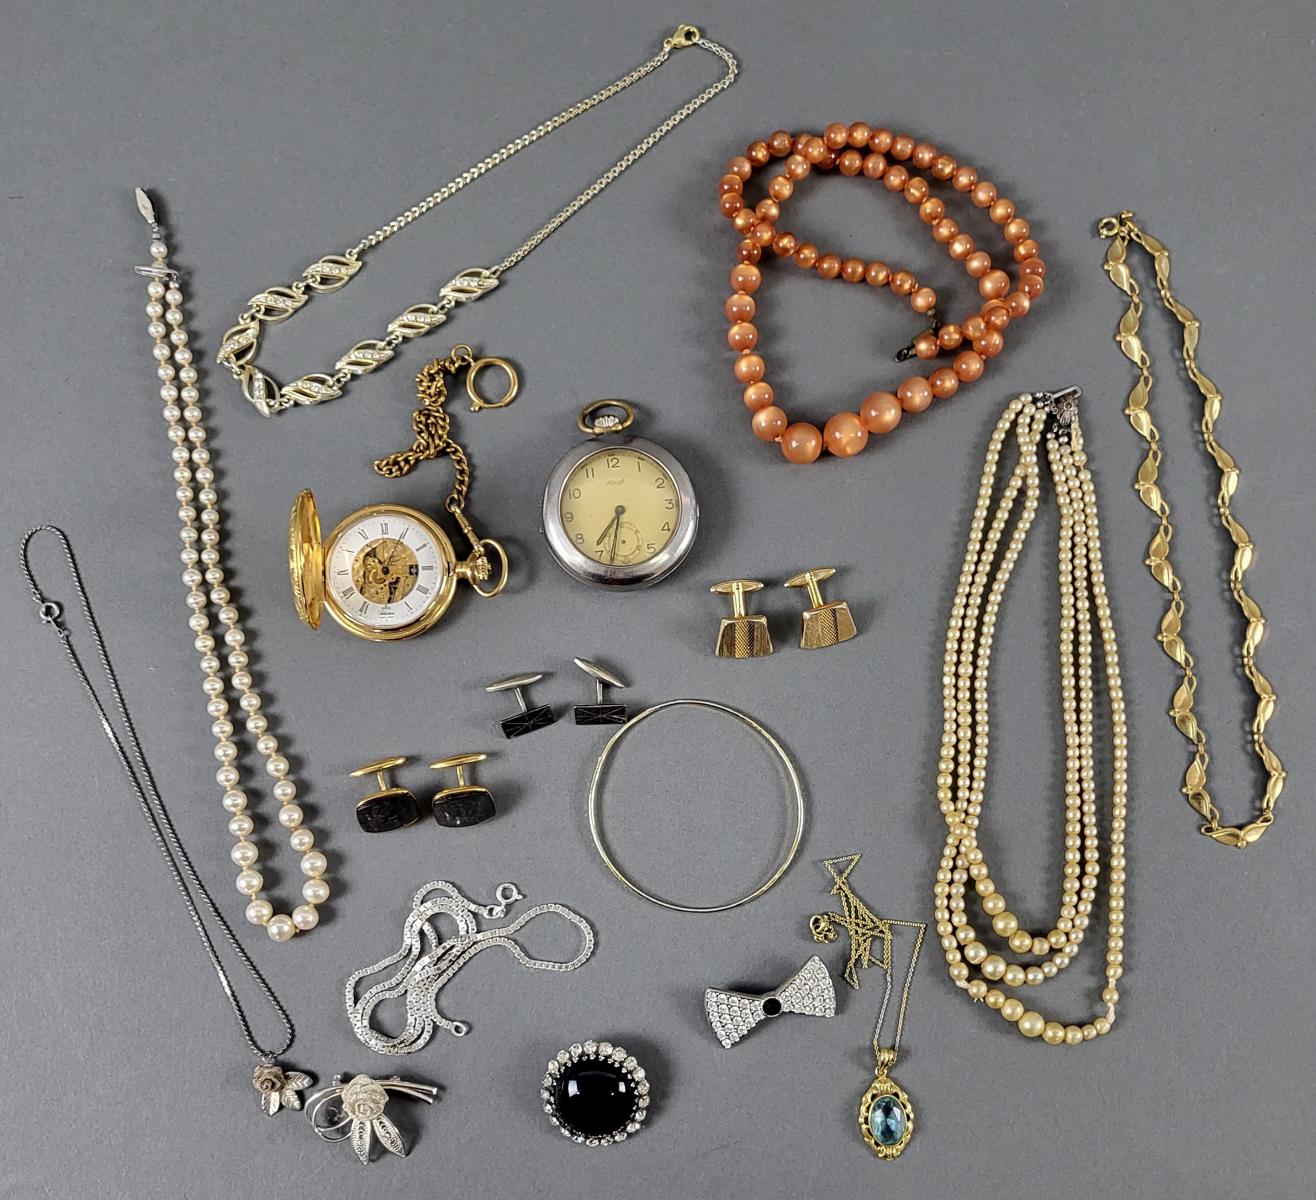 Schmucknachlass mit Uhren, Perlen- und Silberkette